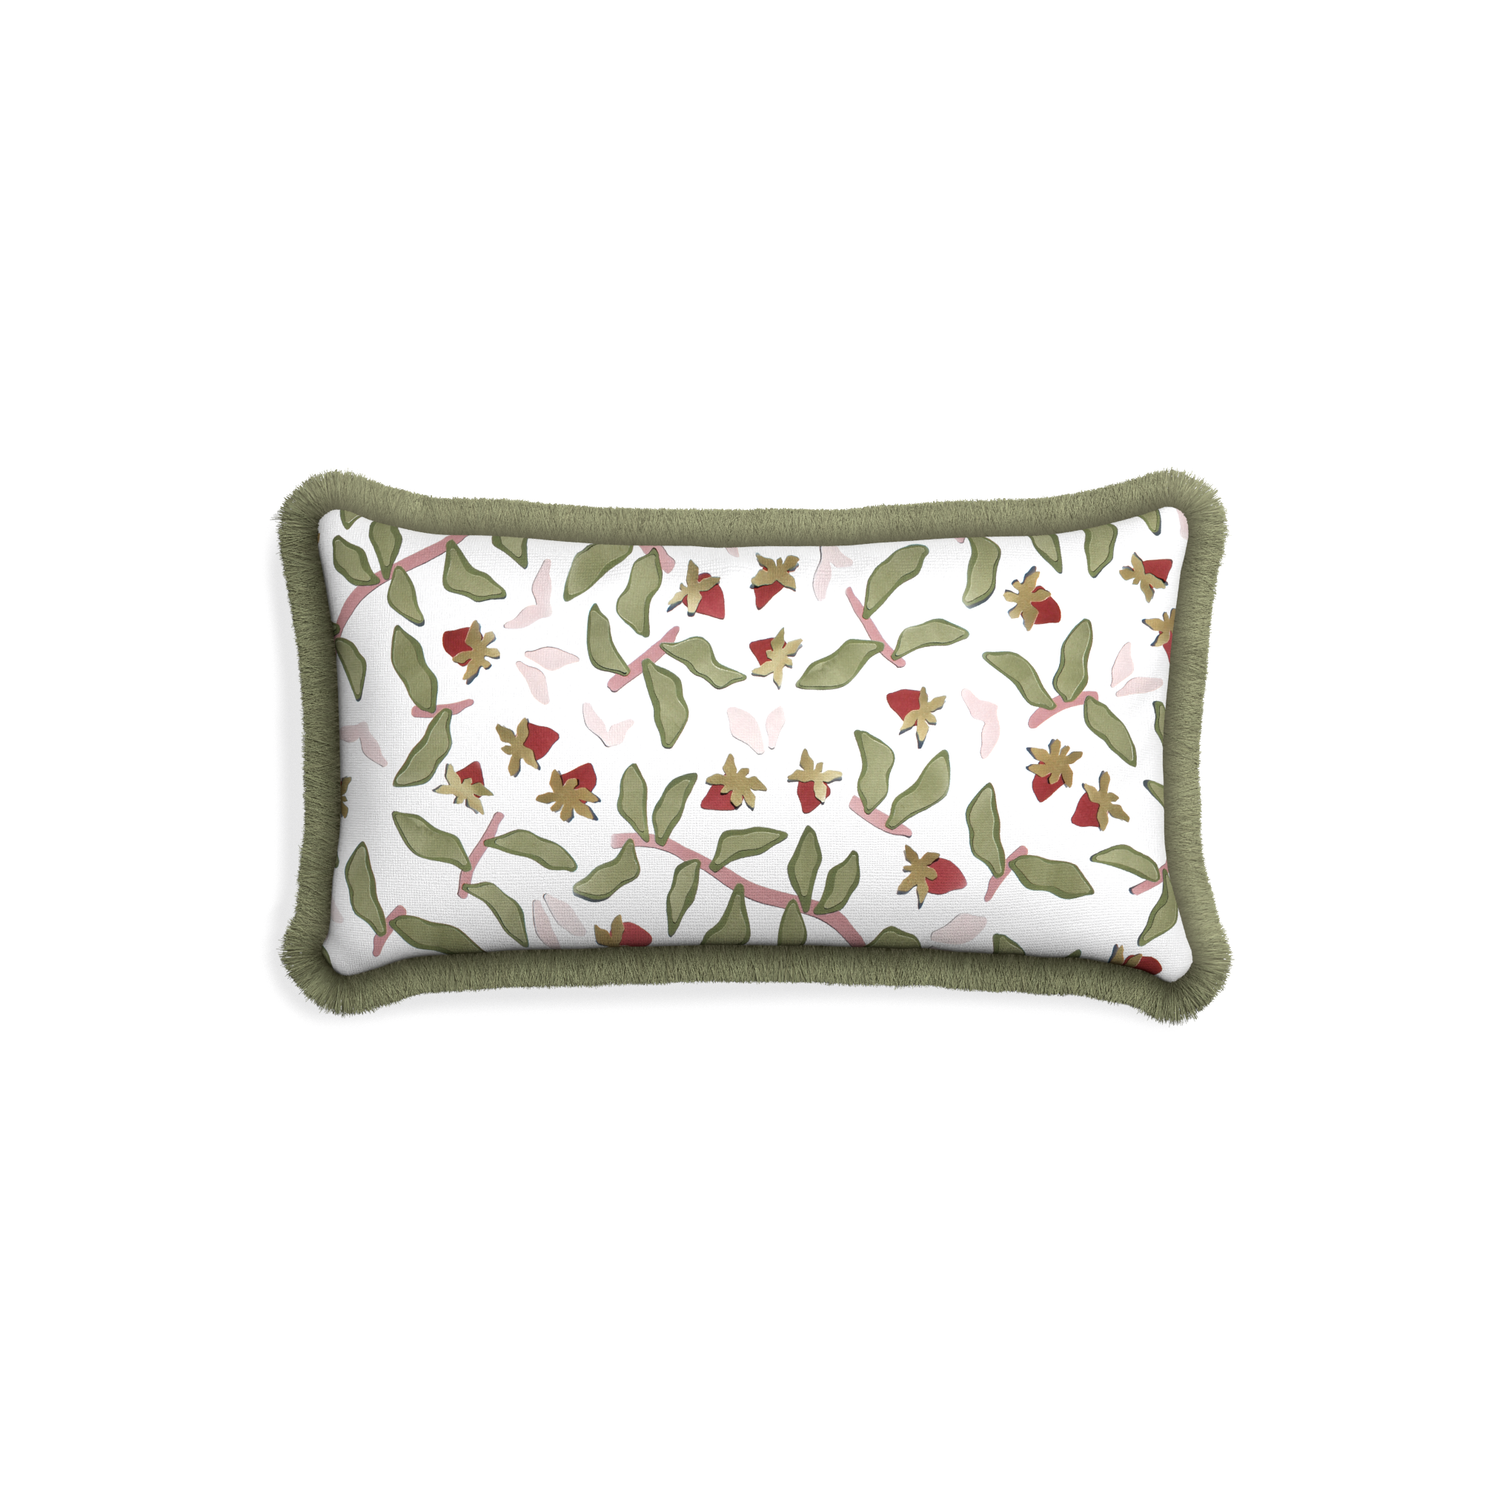 Petite-lumbar nellie custom strawberry & botanicalpillow with sage fringe on white background